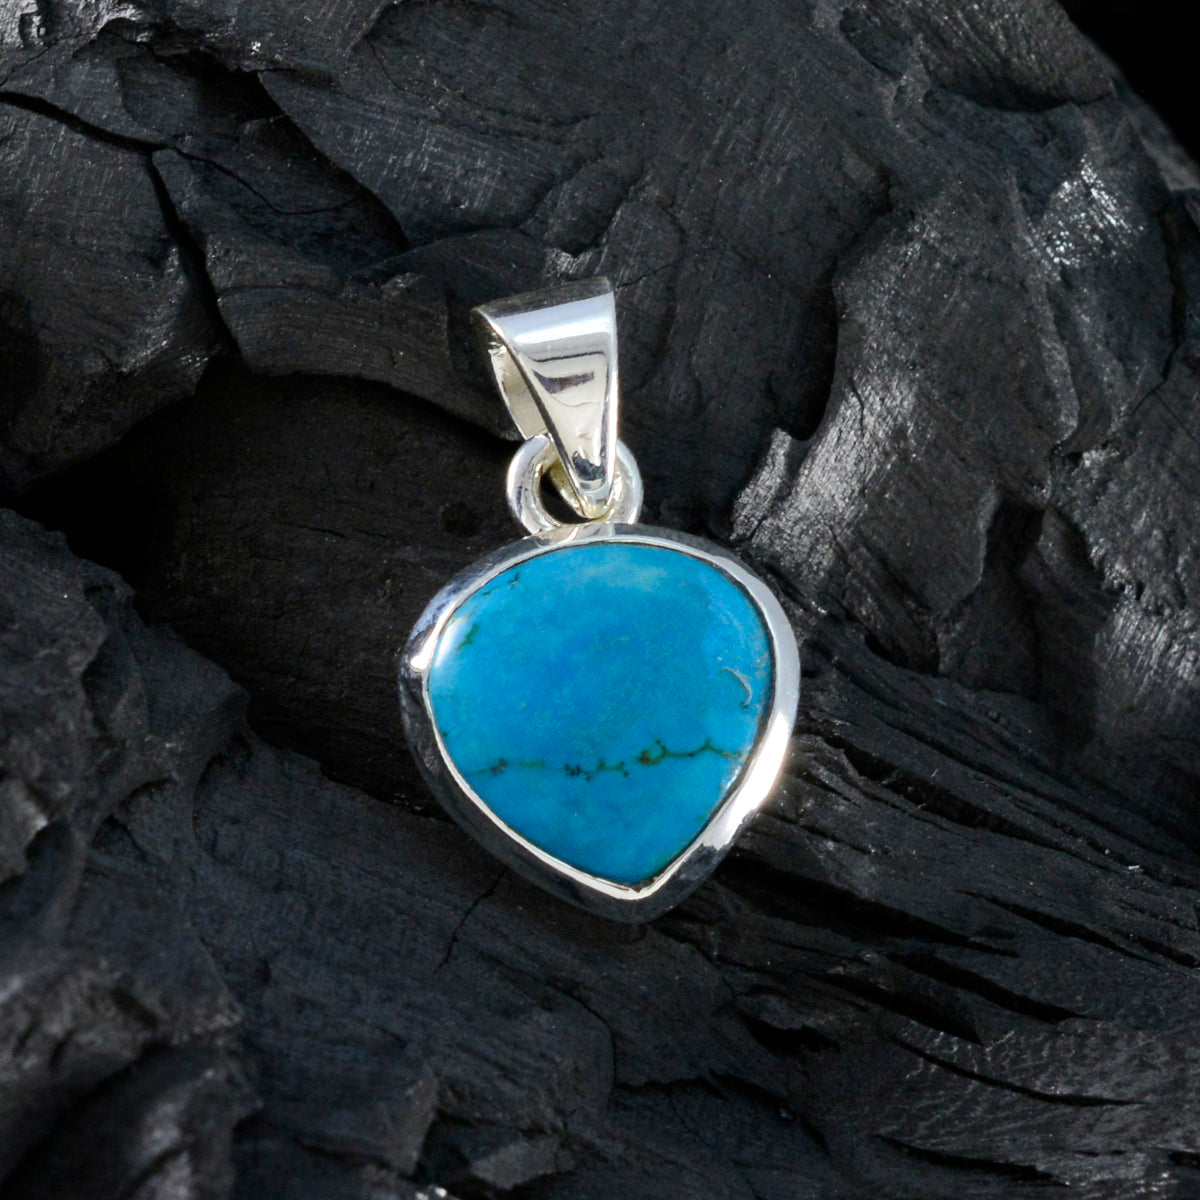 Riyo magnifique pendentif en argent sterling 932 avec cabochon en forme de cœur en pierre précieuse bleu turquoise, cadeau pour petite amie